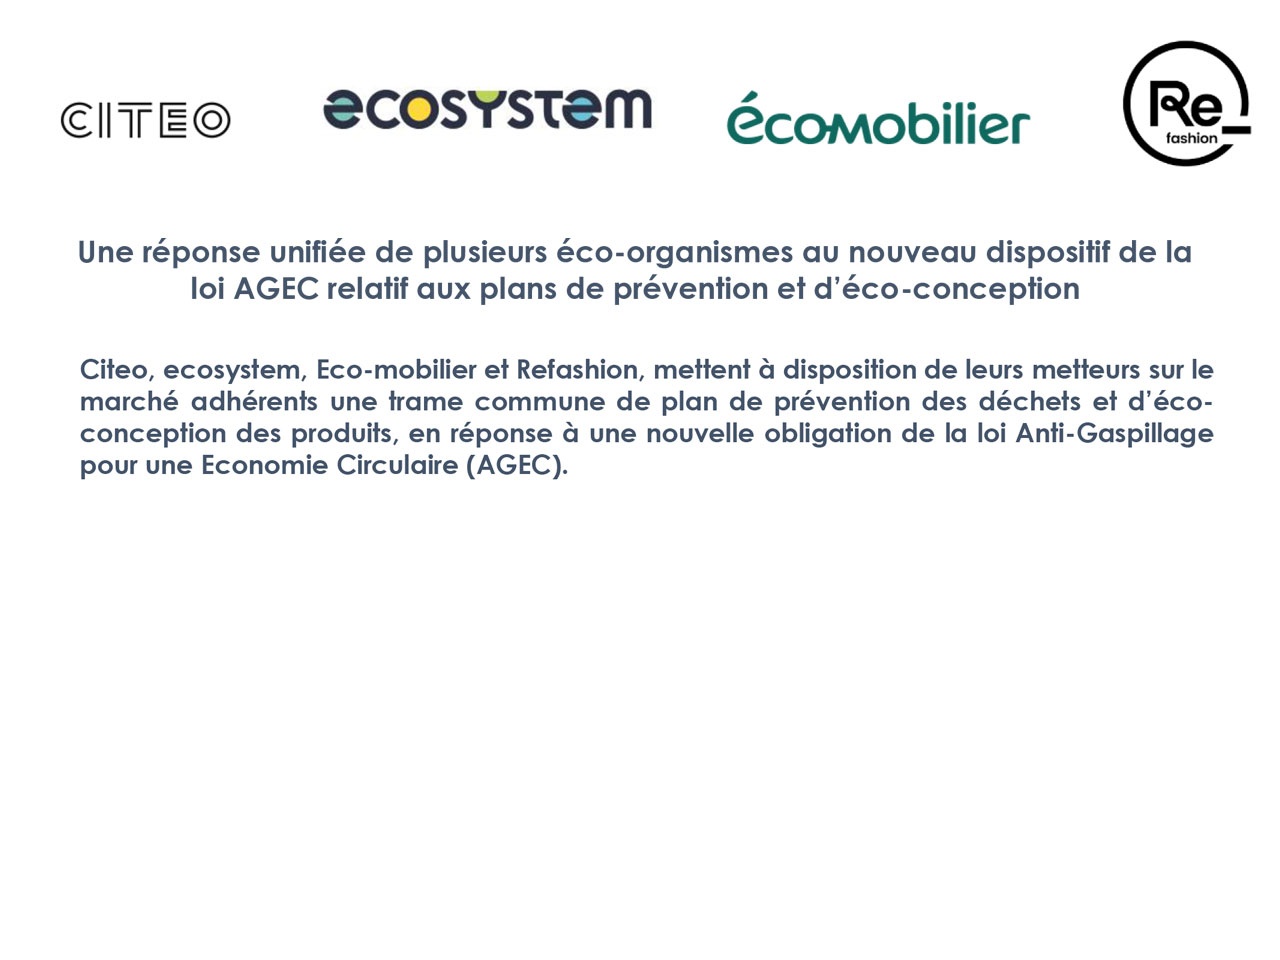 Citeo, ecosystem, Eco-mobilier et Refashion : Une réponse unifiée au nouveau dispositif de la  loi AGEC relatif aux plans de prévention et d’éco-conception